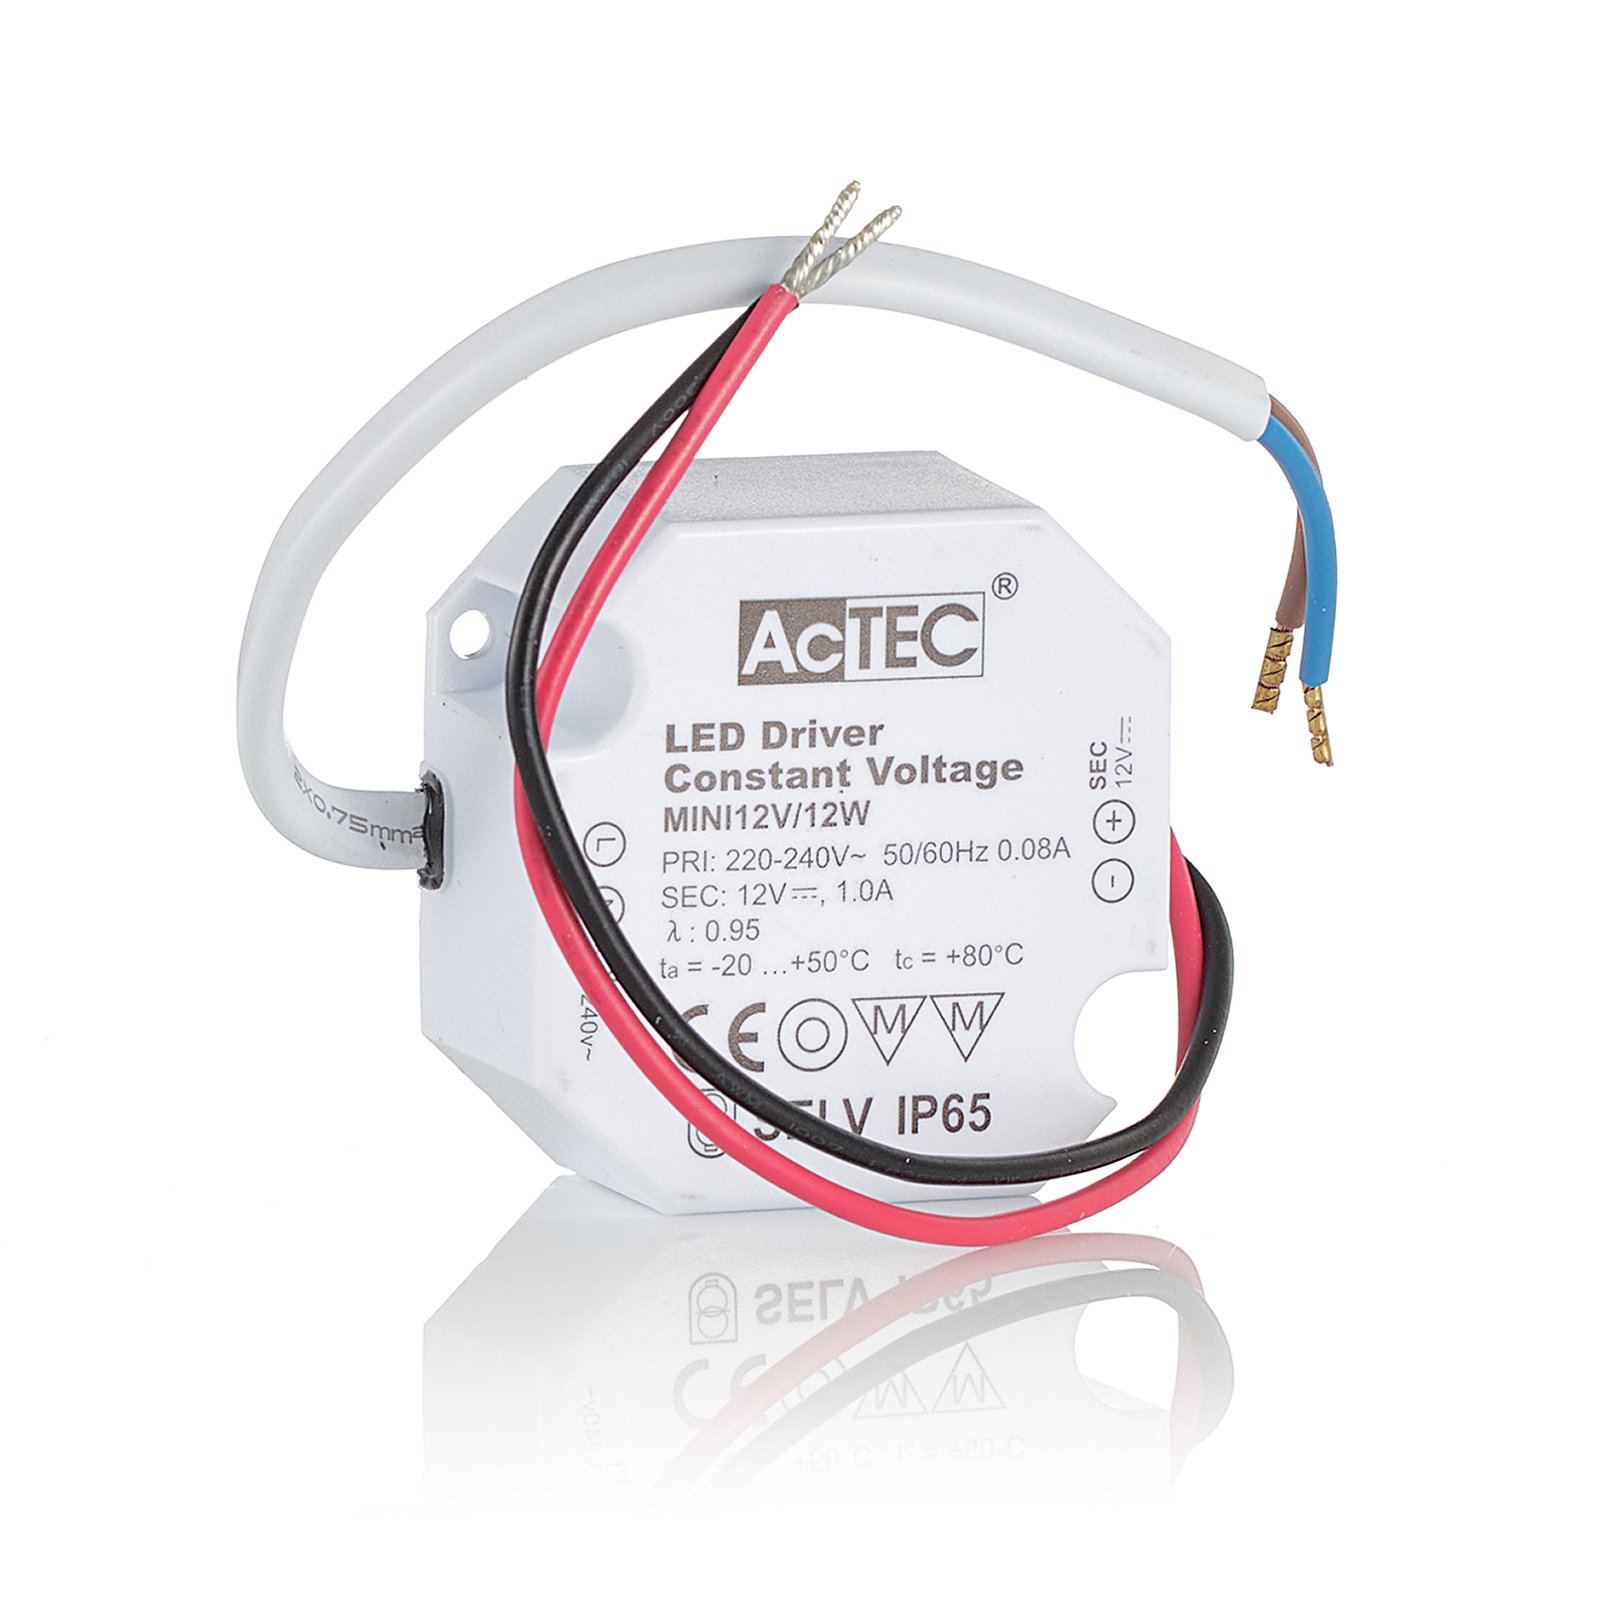 AcTEC Mini transformador LED CV 12V, 12W, IP65